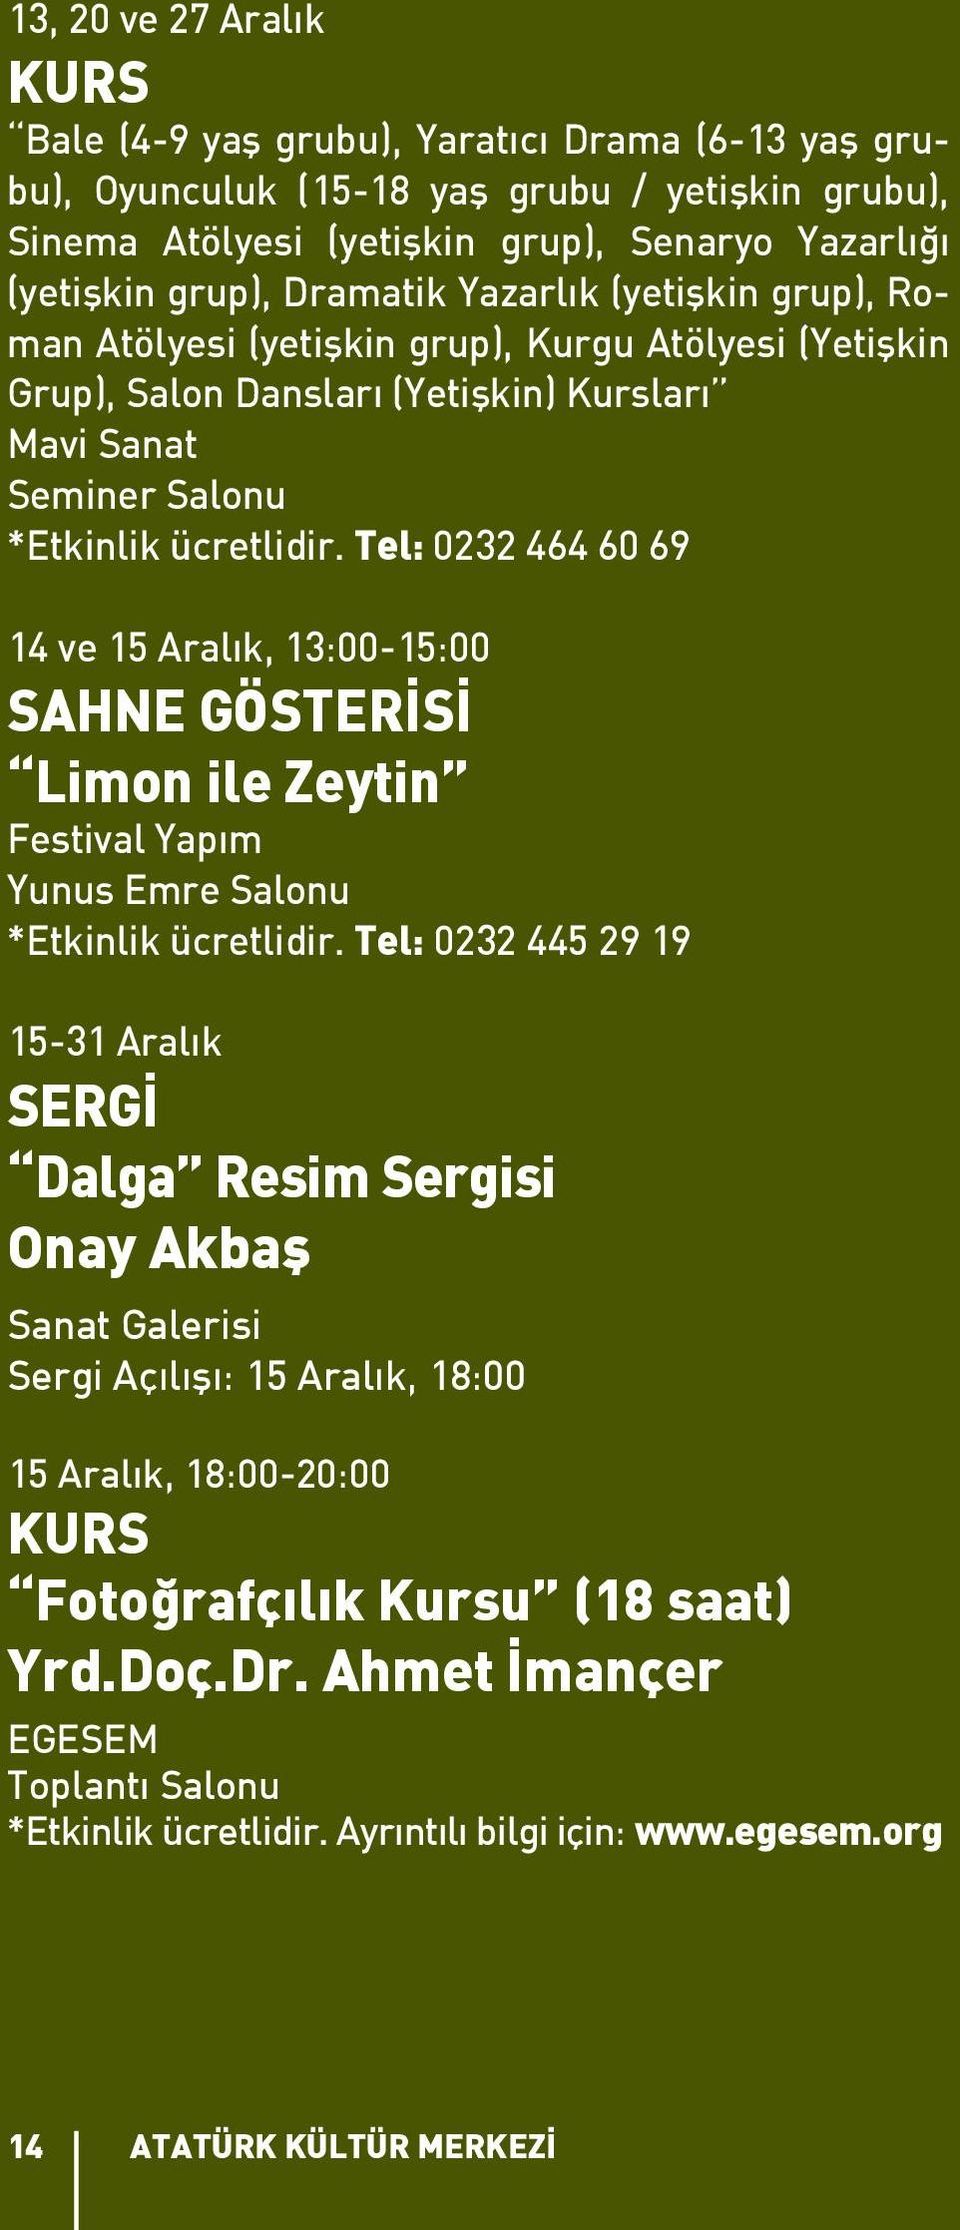 Tel: 0232 464 60 69 14 ve 15 Aralık, 13:00-15:00 SAHNE GÖSTERİSİ Limon ile Zeytin Festival Yapım Yunus Emre Salonu *Etkinlik ücretlidir.